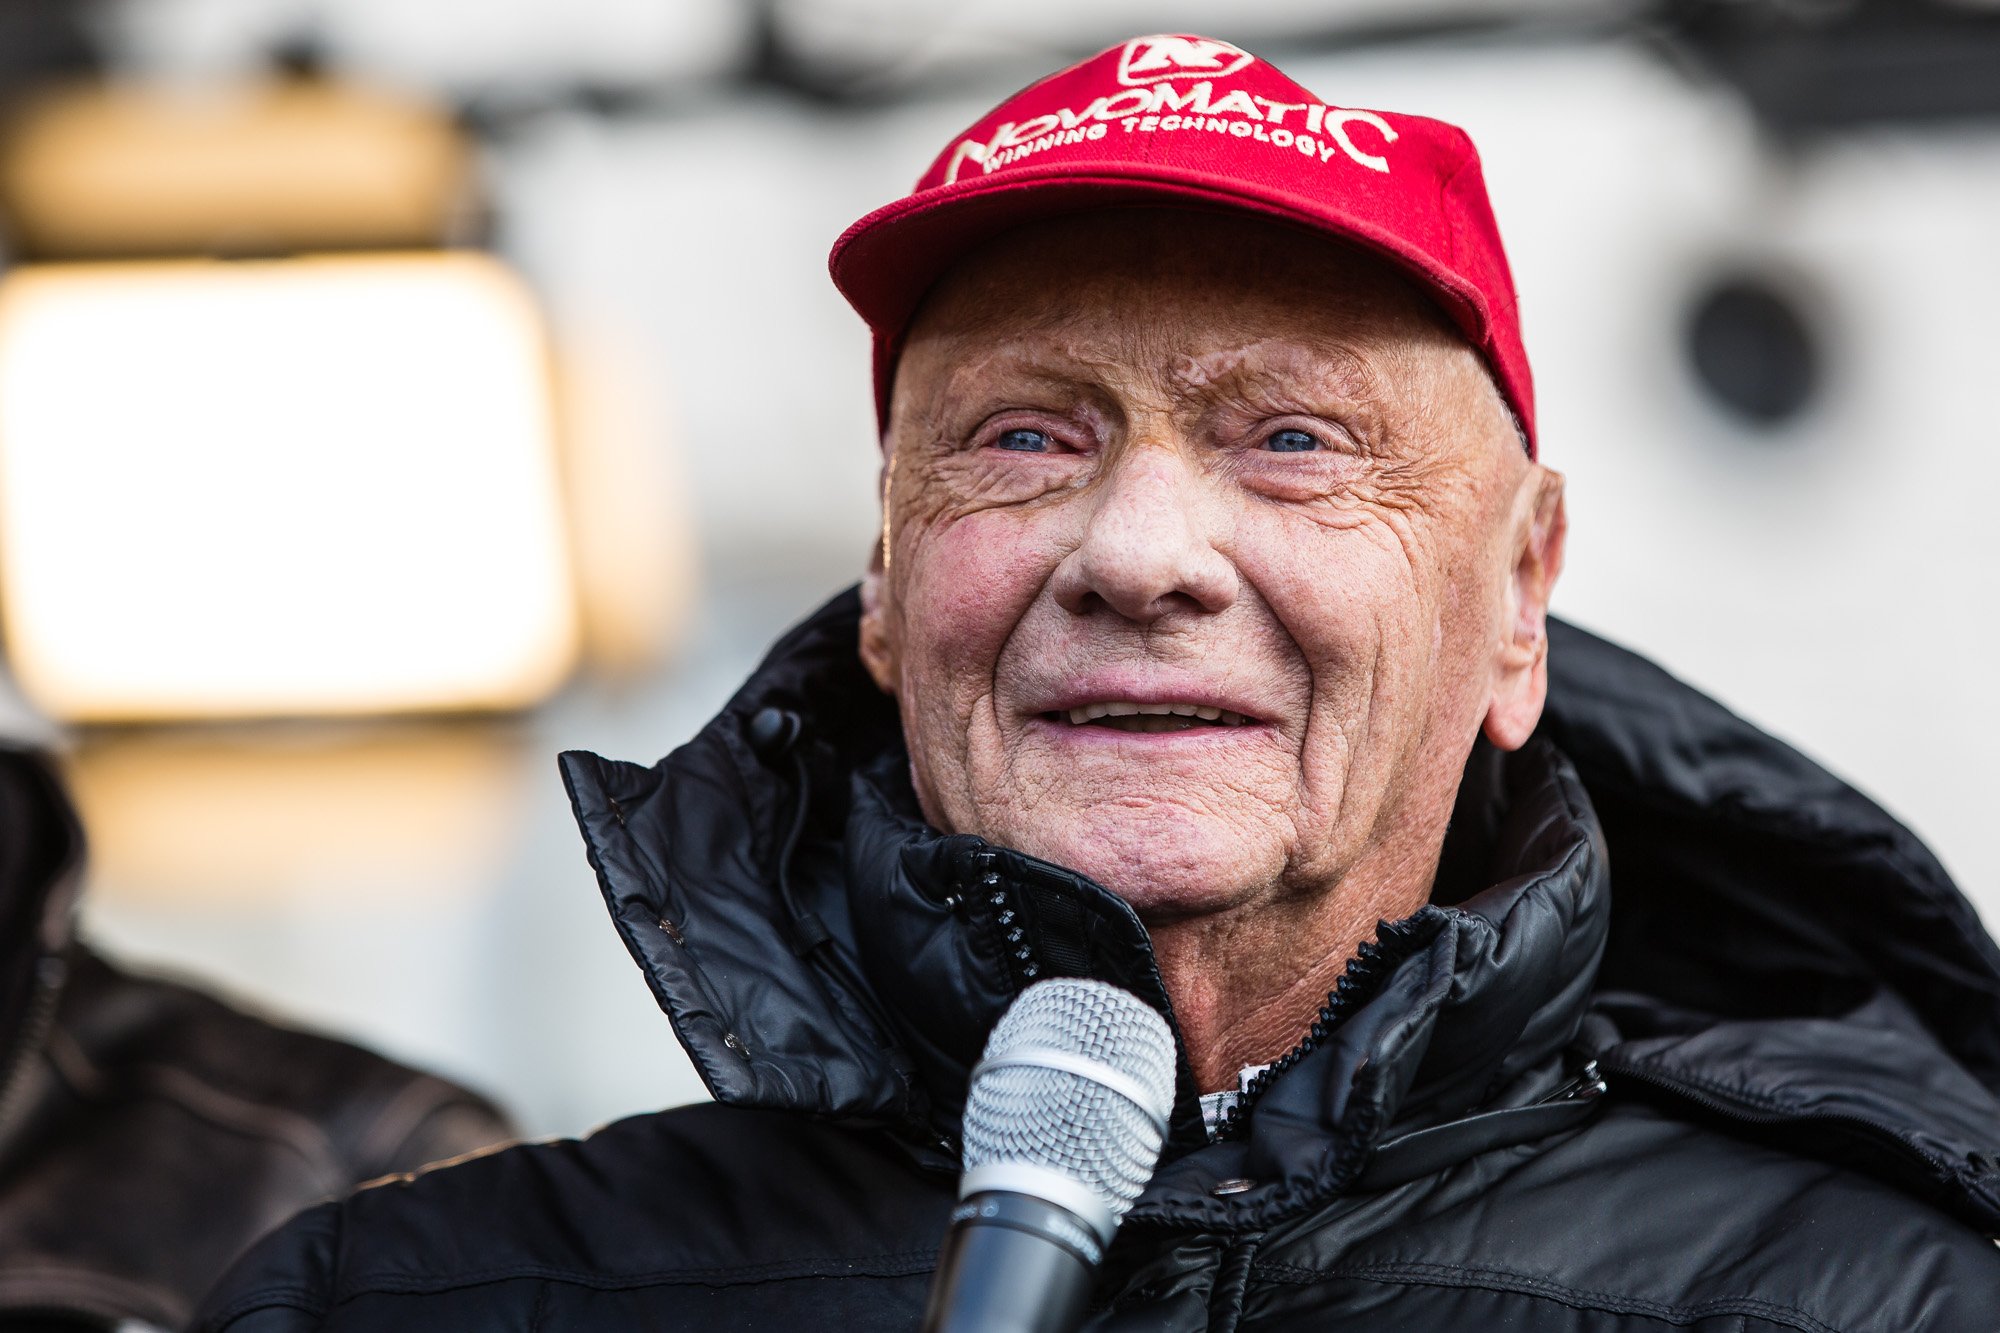 Niki Lauda en el evento público "ÖAMTC World of Motorsports" que acompaña a la Gala de la FIA en el Hofburg en Viena el viernes 2 de diciembre en la Plaza de los Héroes de Viena. | Imagen: Wikipedia